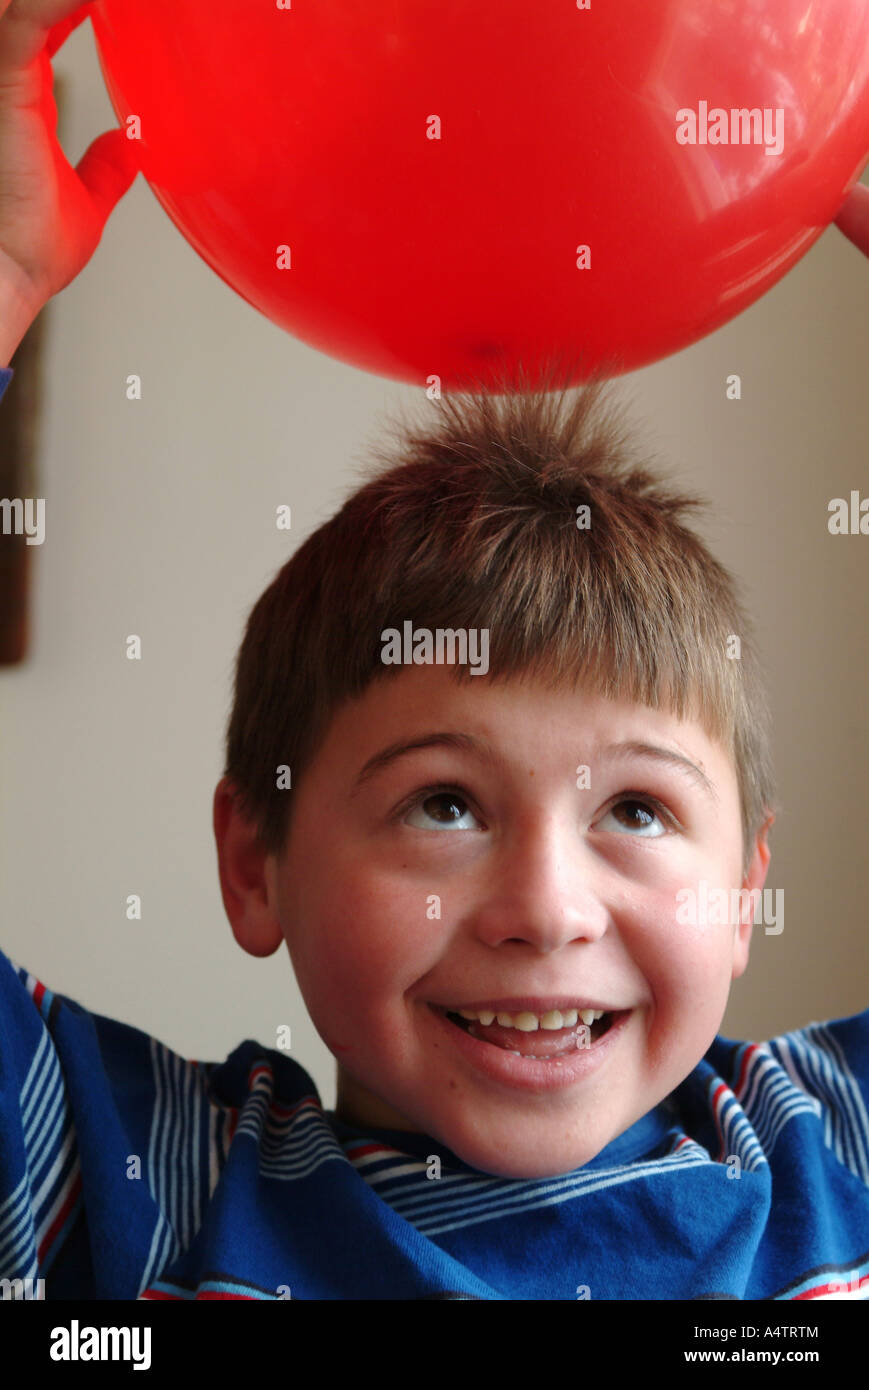 Ein 7 Jahre alter Junge hält einen roten Ballon über seinen Kopf und statische Elektrizität zieht seine Haare in Richtung der Ballon Stockfoto